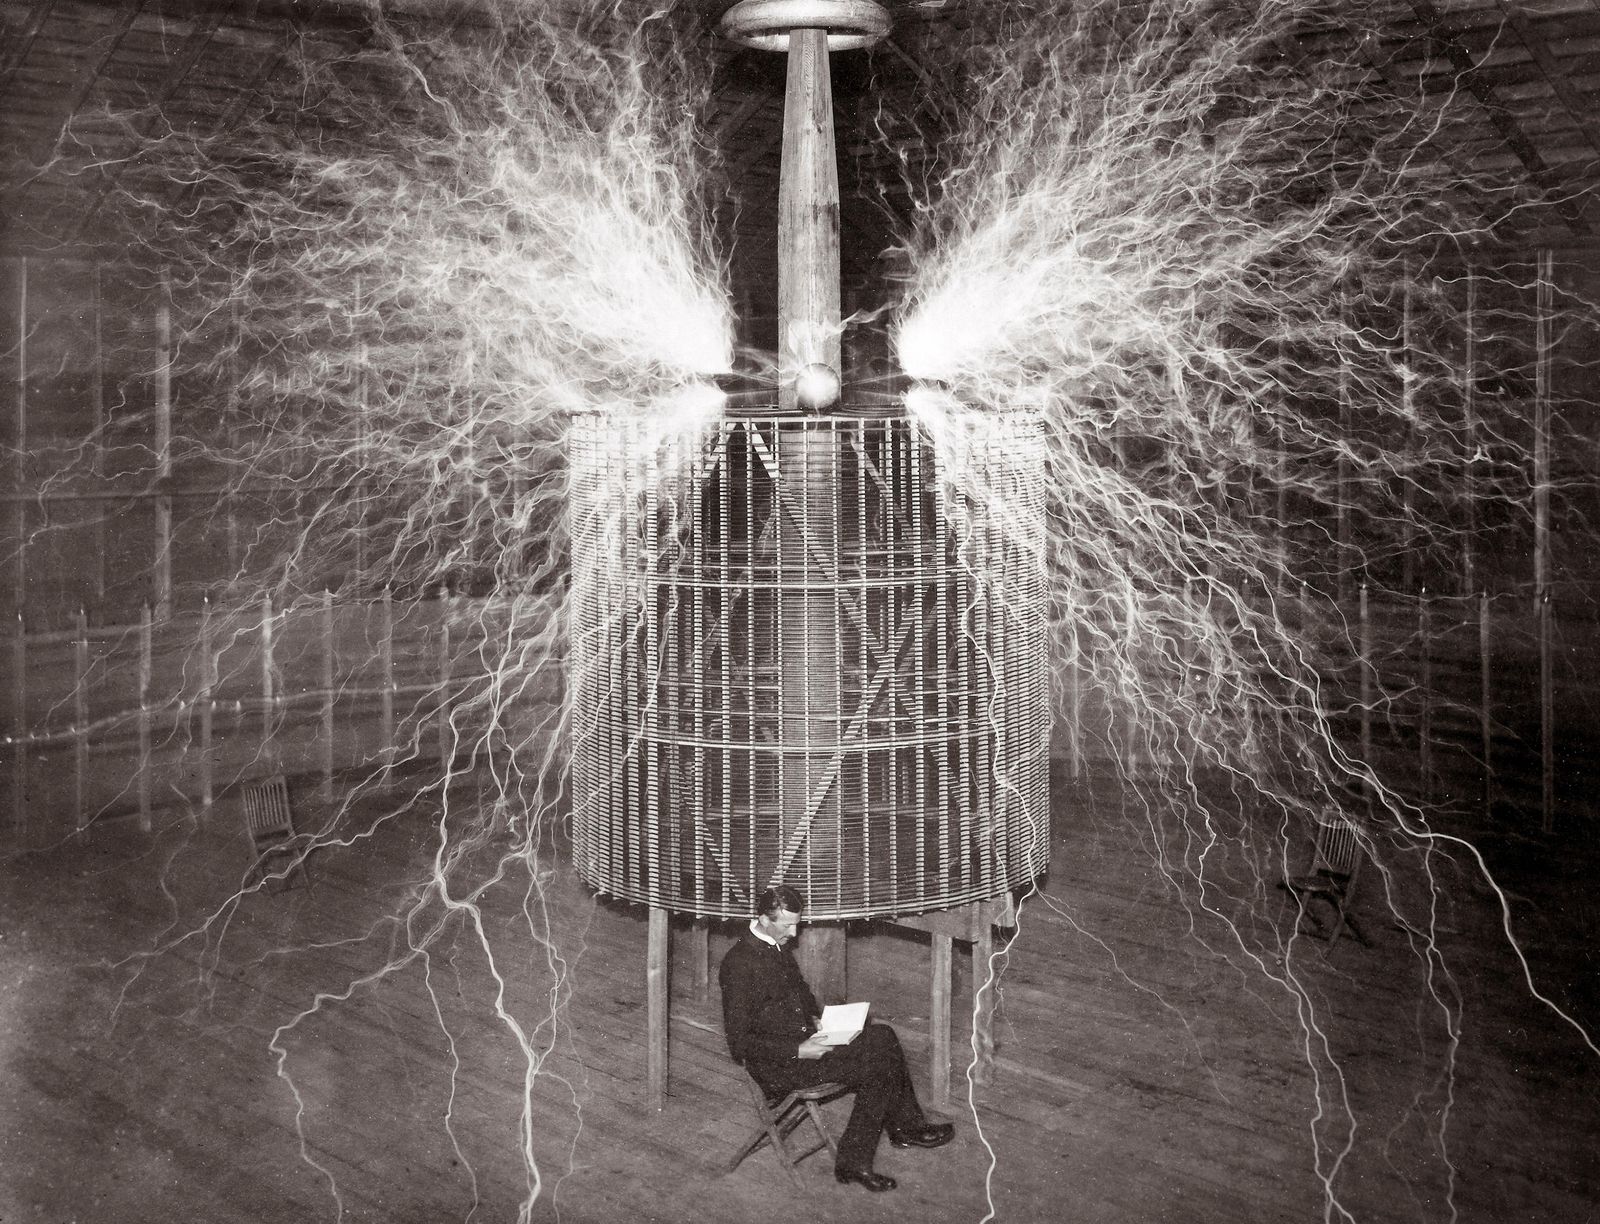 Nikola Tesla's Struggle to Remain Relevant, Travel